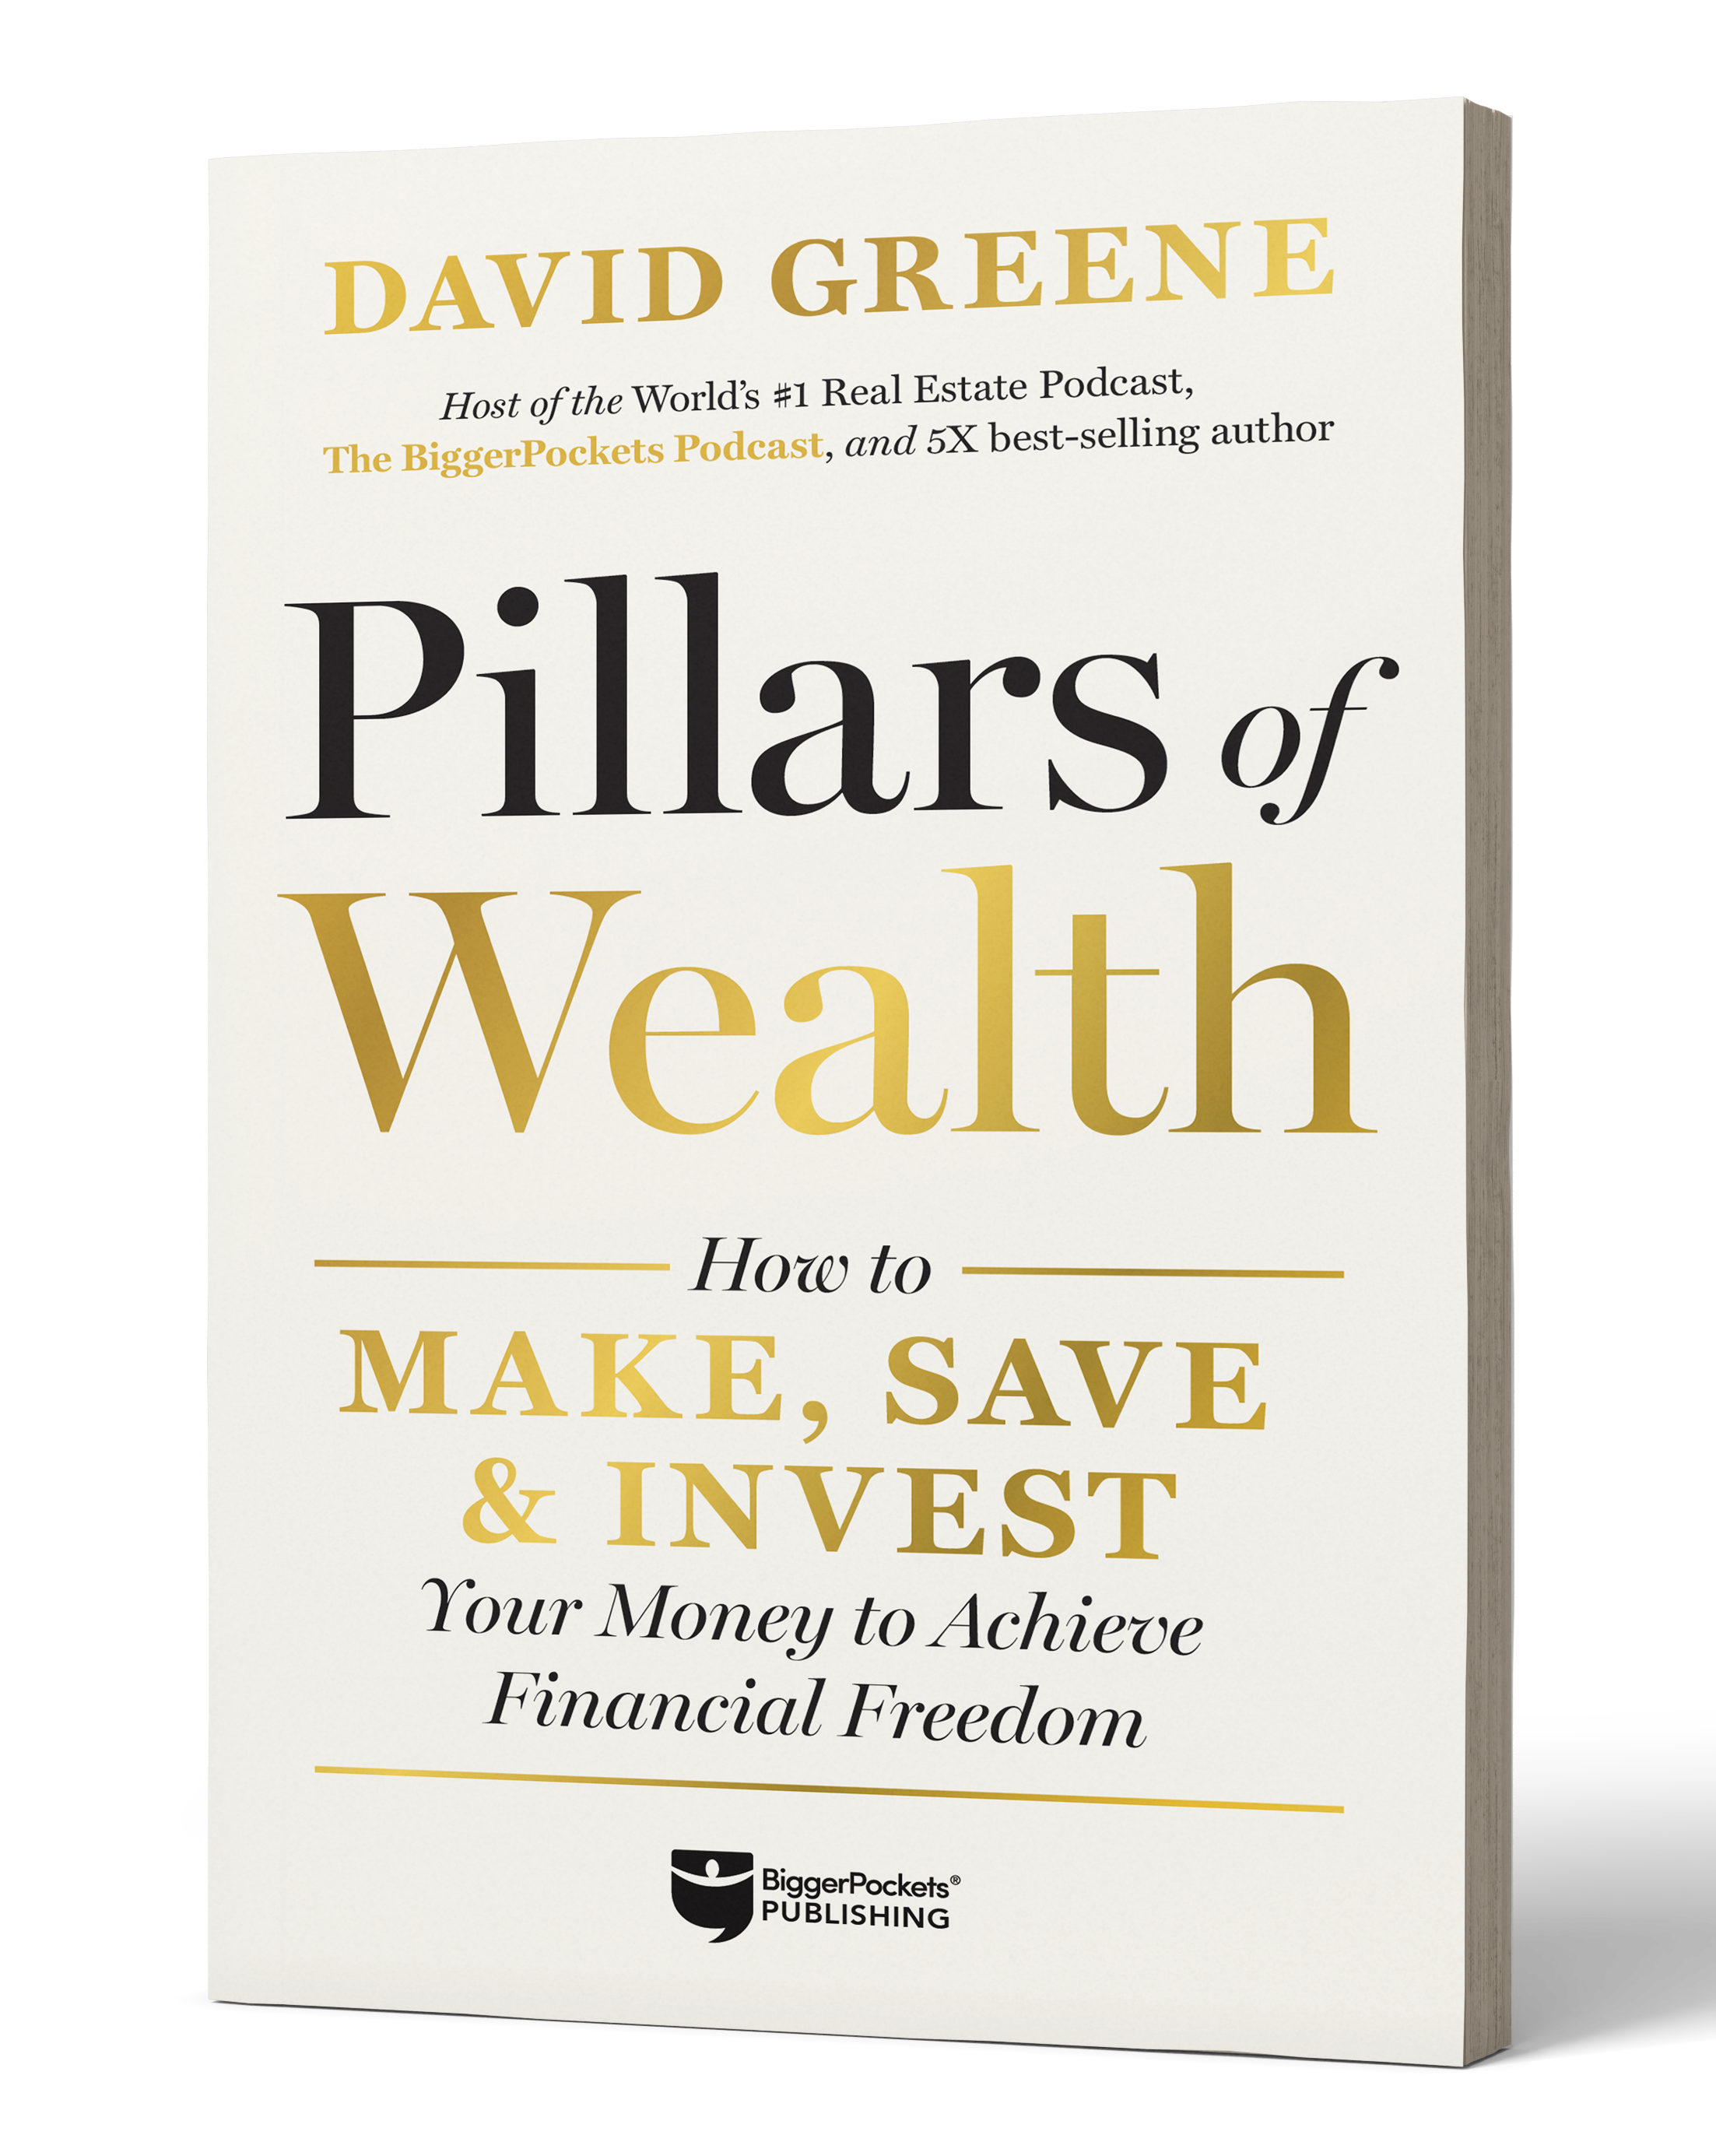 Sneak Peek: A Look Inside David Greene’s New Book “Pillars of Wealth”